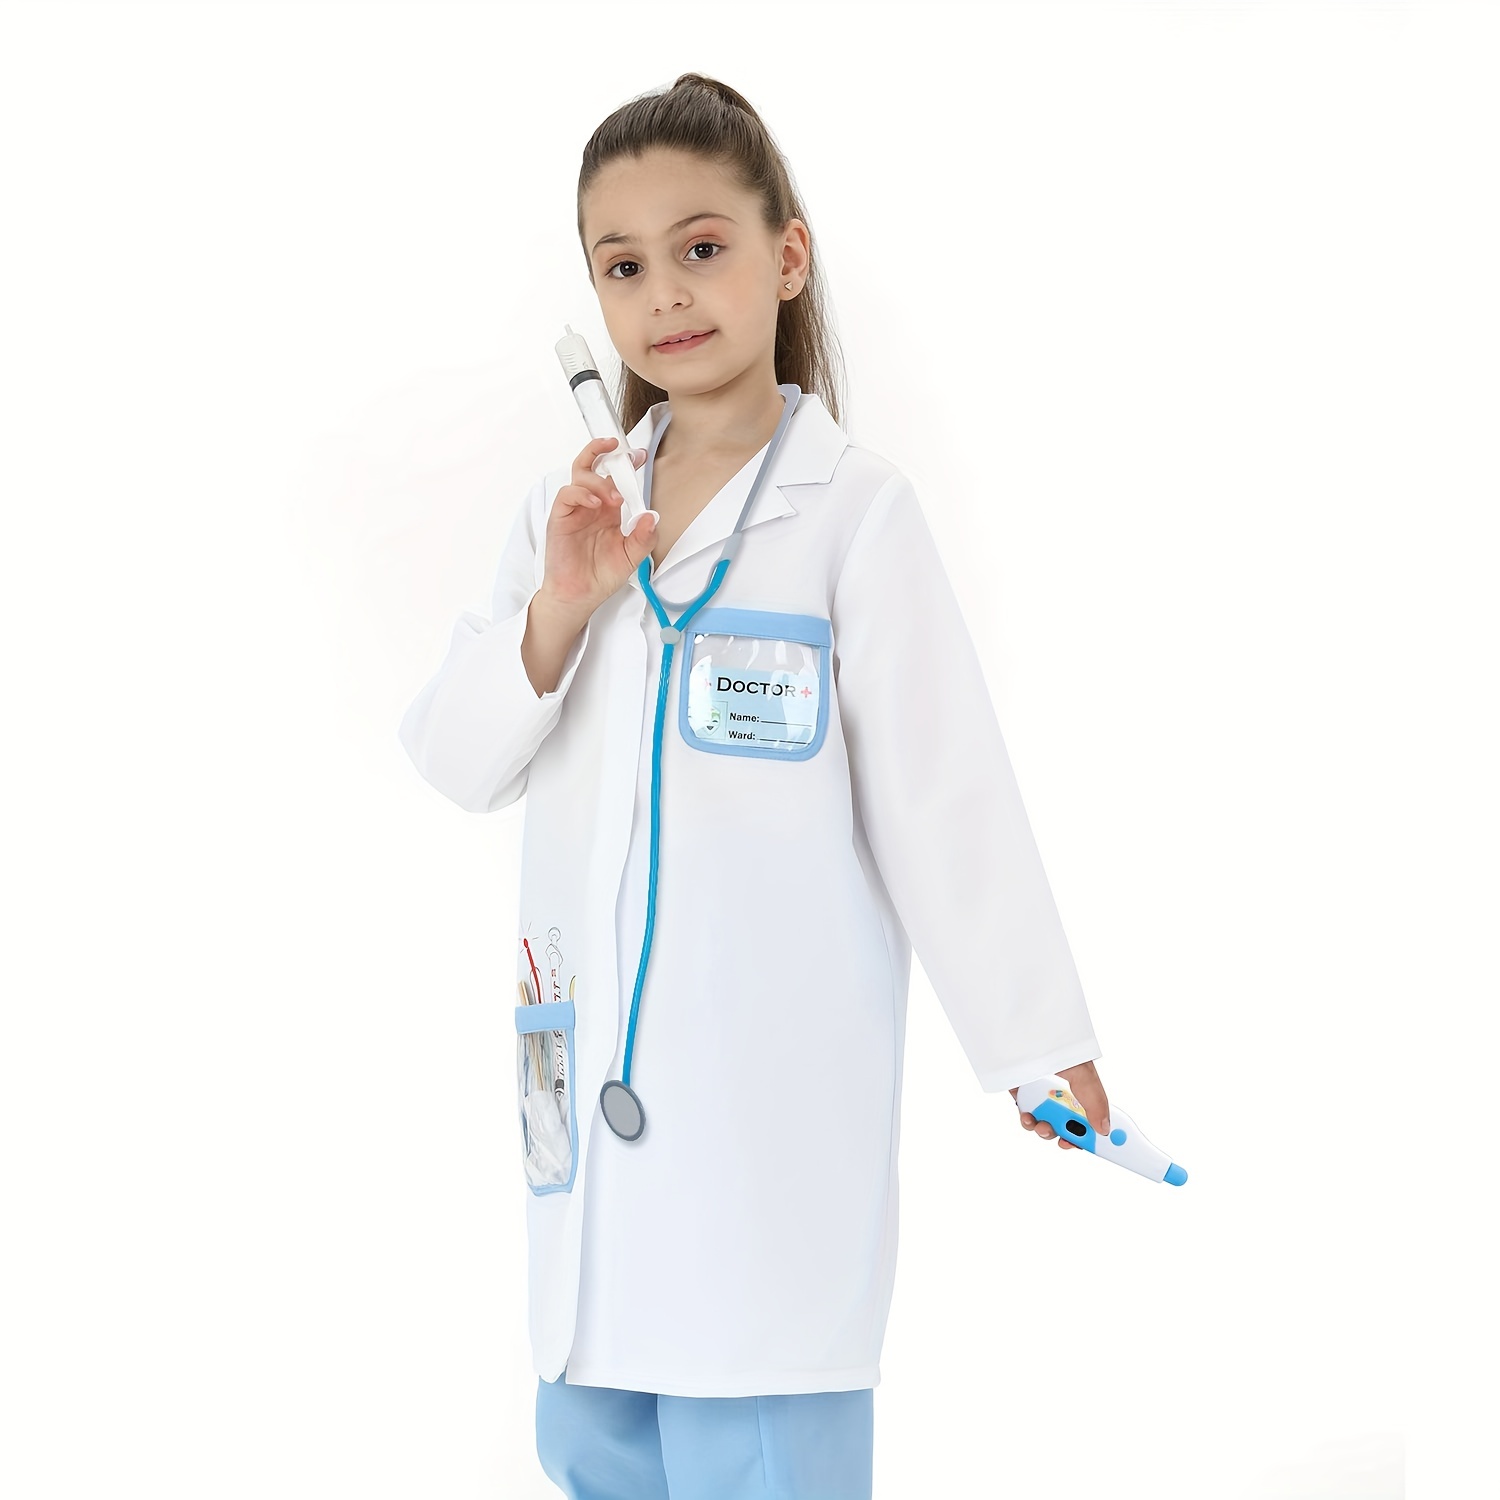 Malette Docteur Jouet Enfant Costume Cosplay Poupee Stethoscope Medical  Cadeau